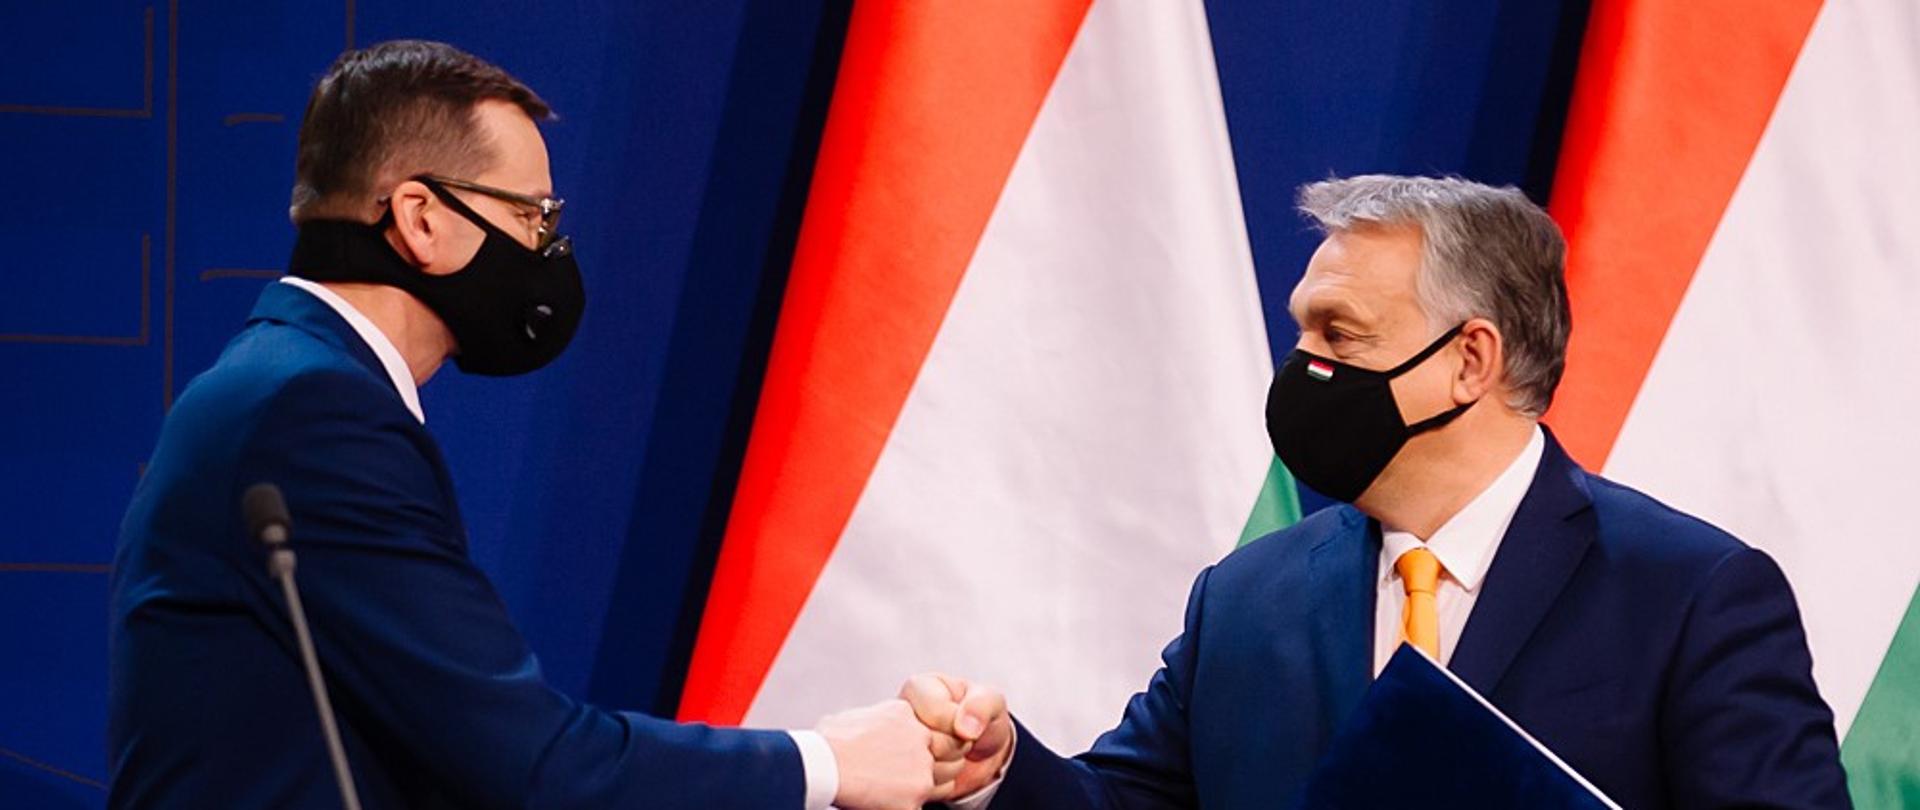 Premierzy Polski i Węgier przybijają sobie żółwika.